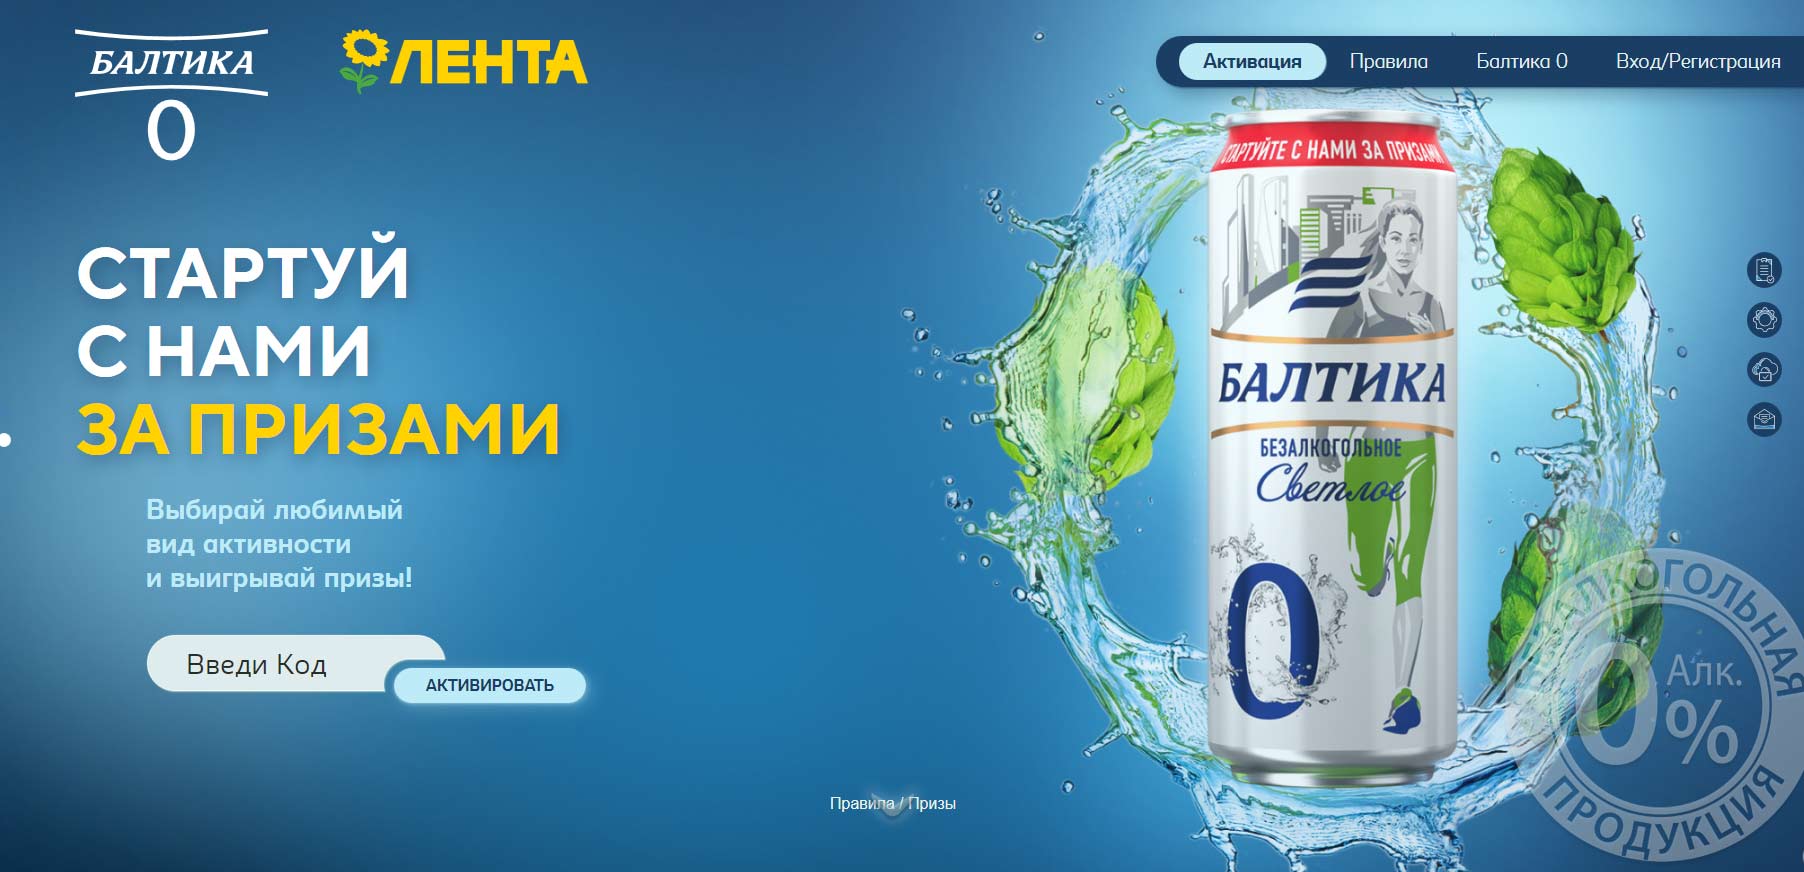 baltika0.ru - акция Балтика в Лента